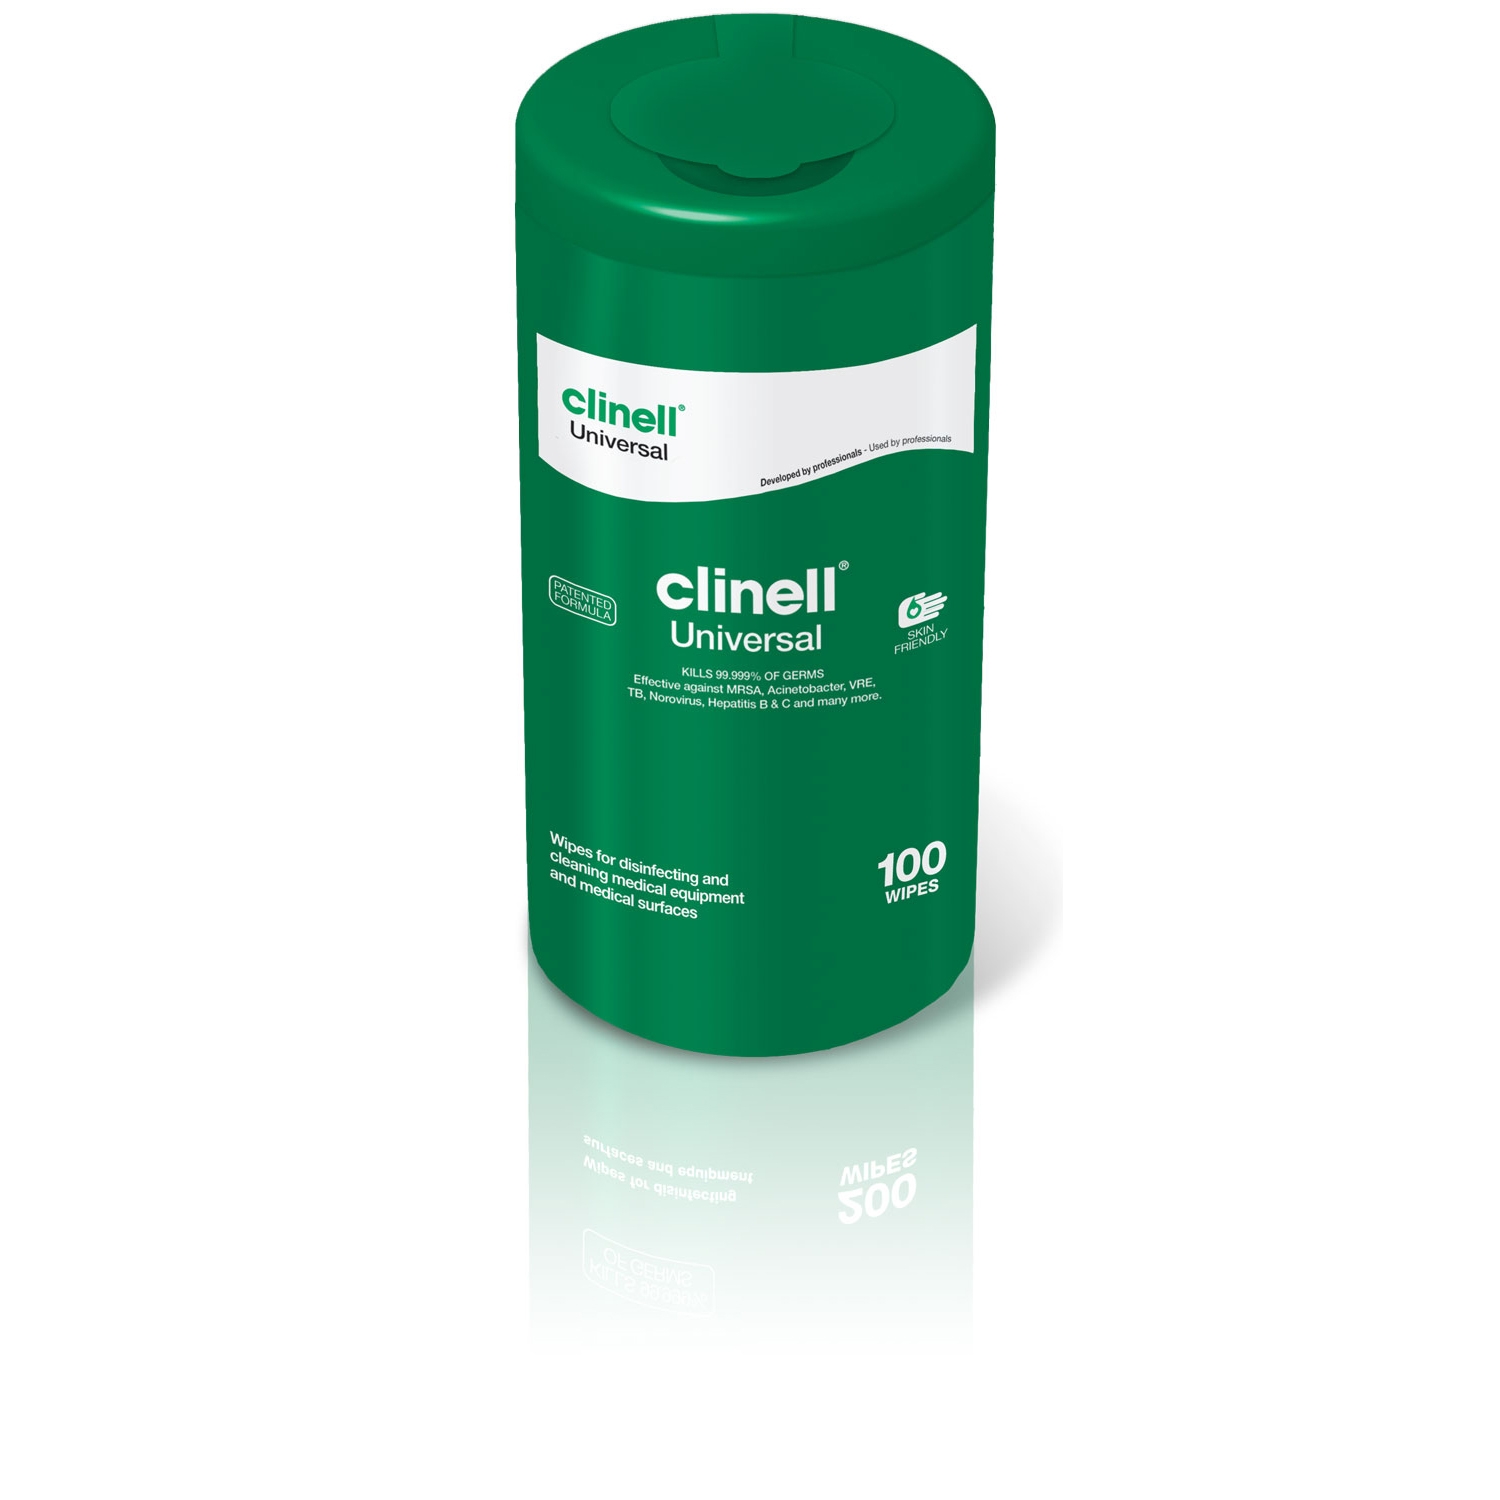 Clinell Universal desinfectiedoekjes medische oppervlakken - alcoholvrij - refill-koker (100 st)